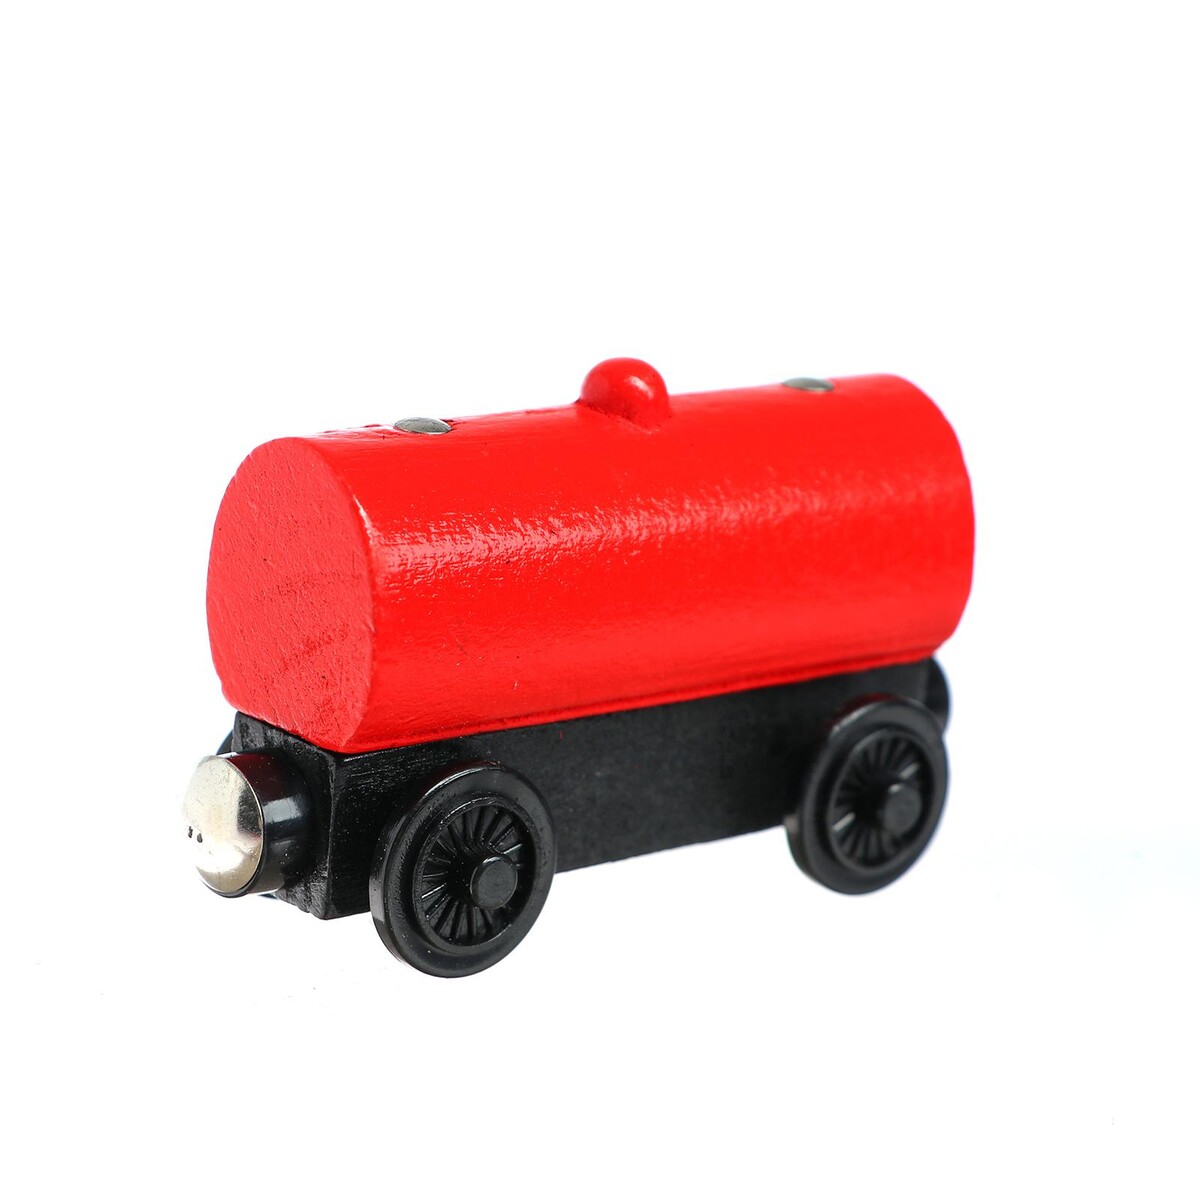 Детский вагончик для железной дороги 3,4×8,5×5,1 см marklin удлинитель 4 проводниковый для железной дороги